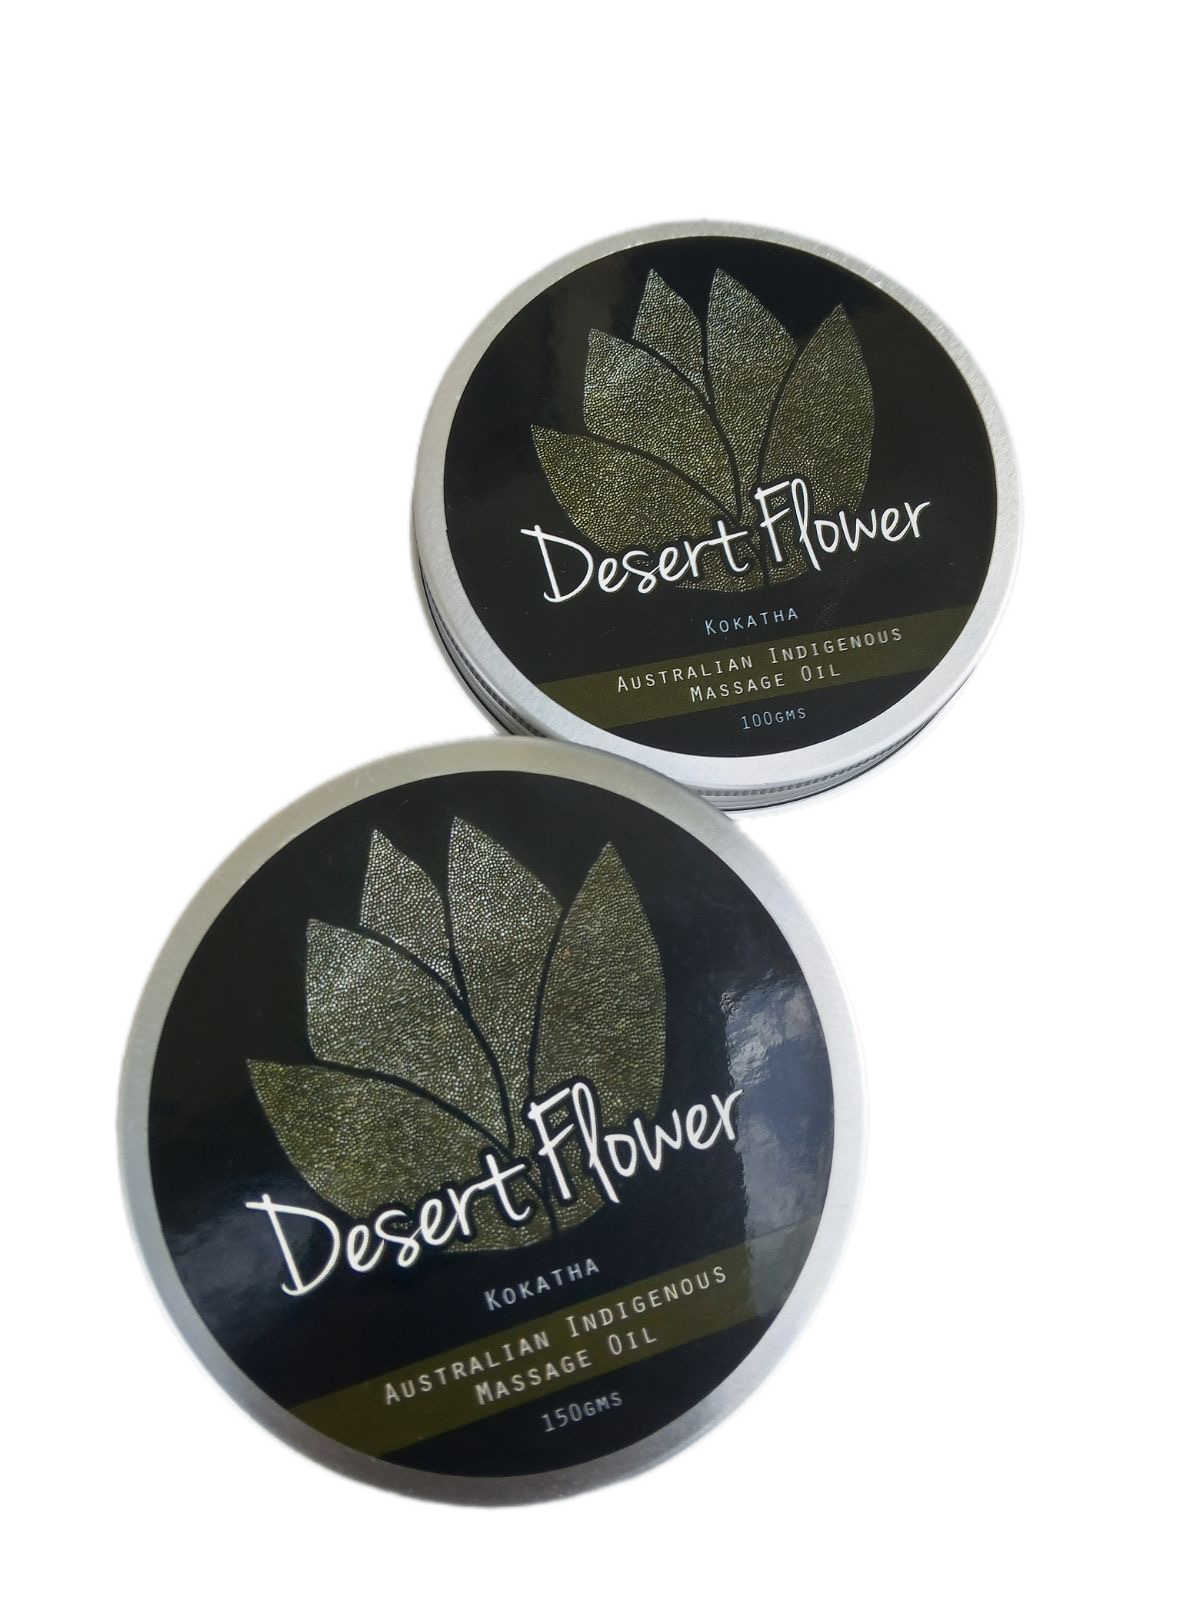 Desert Flower - Massage Oil (Balm)